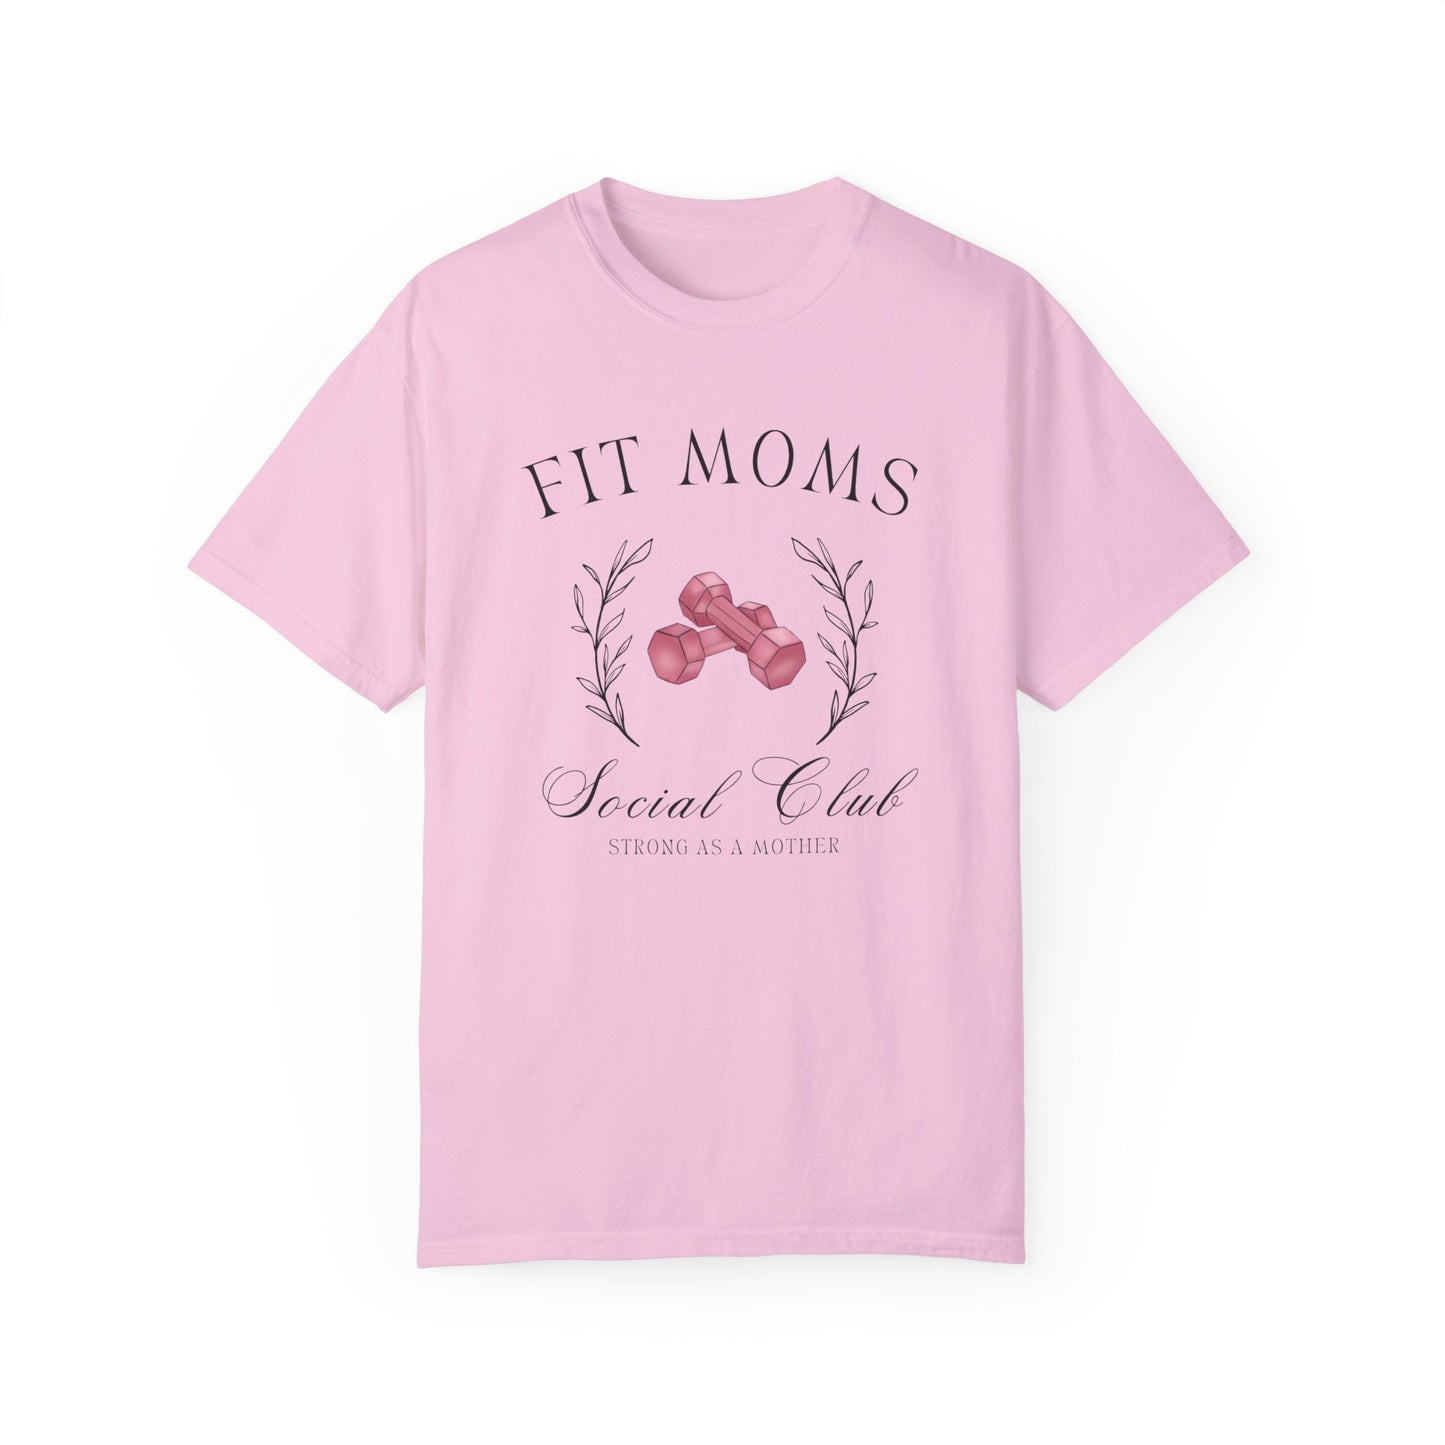 Fit Moms T-shirt